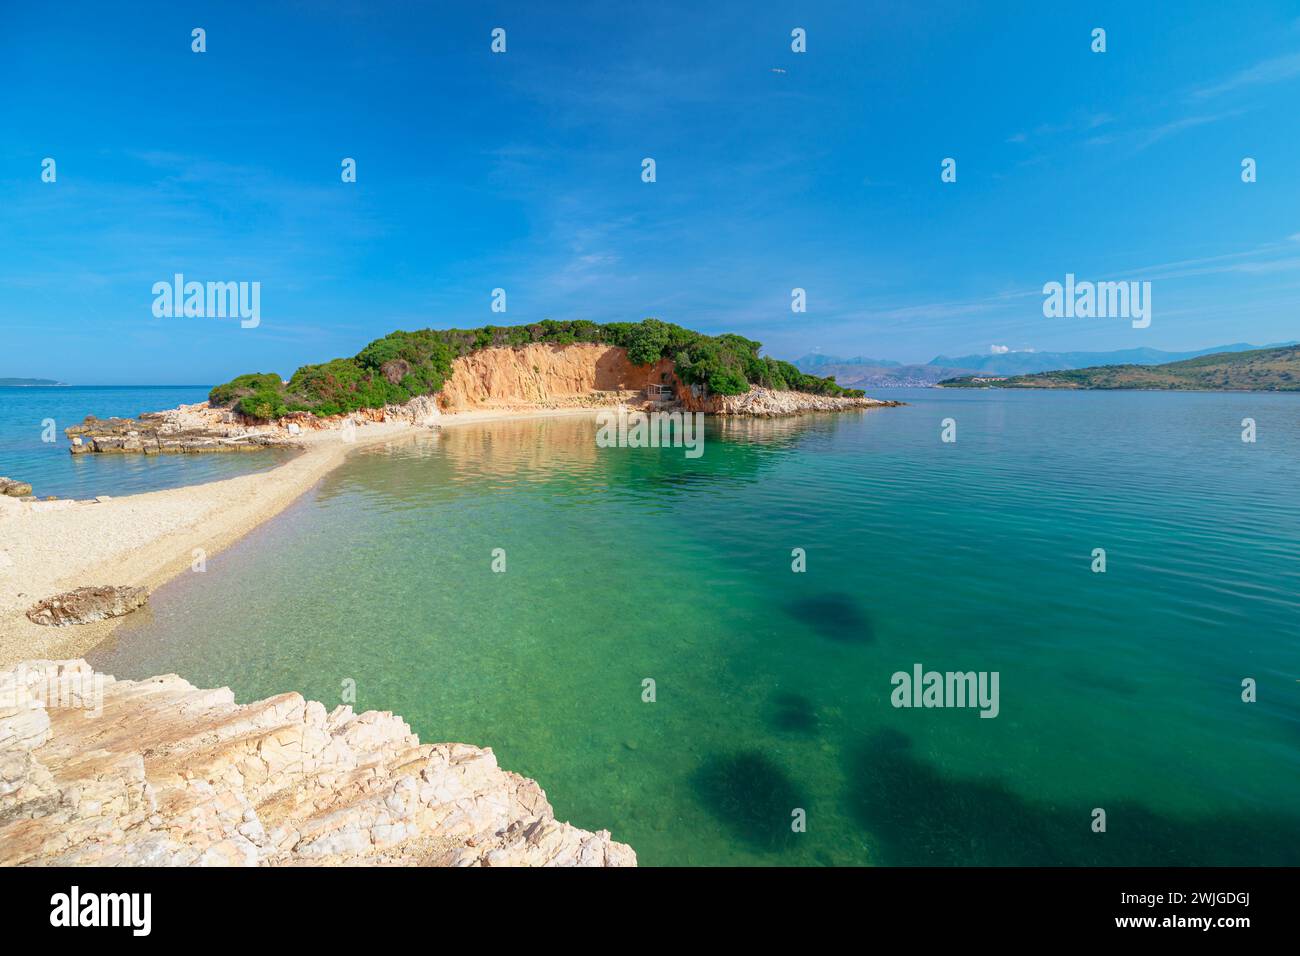 Le isole Ksamil, note anche come le 3 isole o arcipelago di Ksamil, sono un gruppo di piccole isole situate lungo la costa meridionale dell'Albania, vicino al Foto Stock